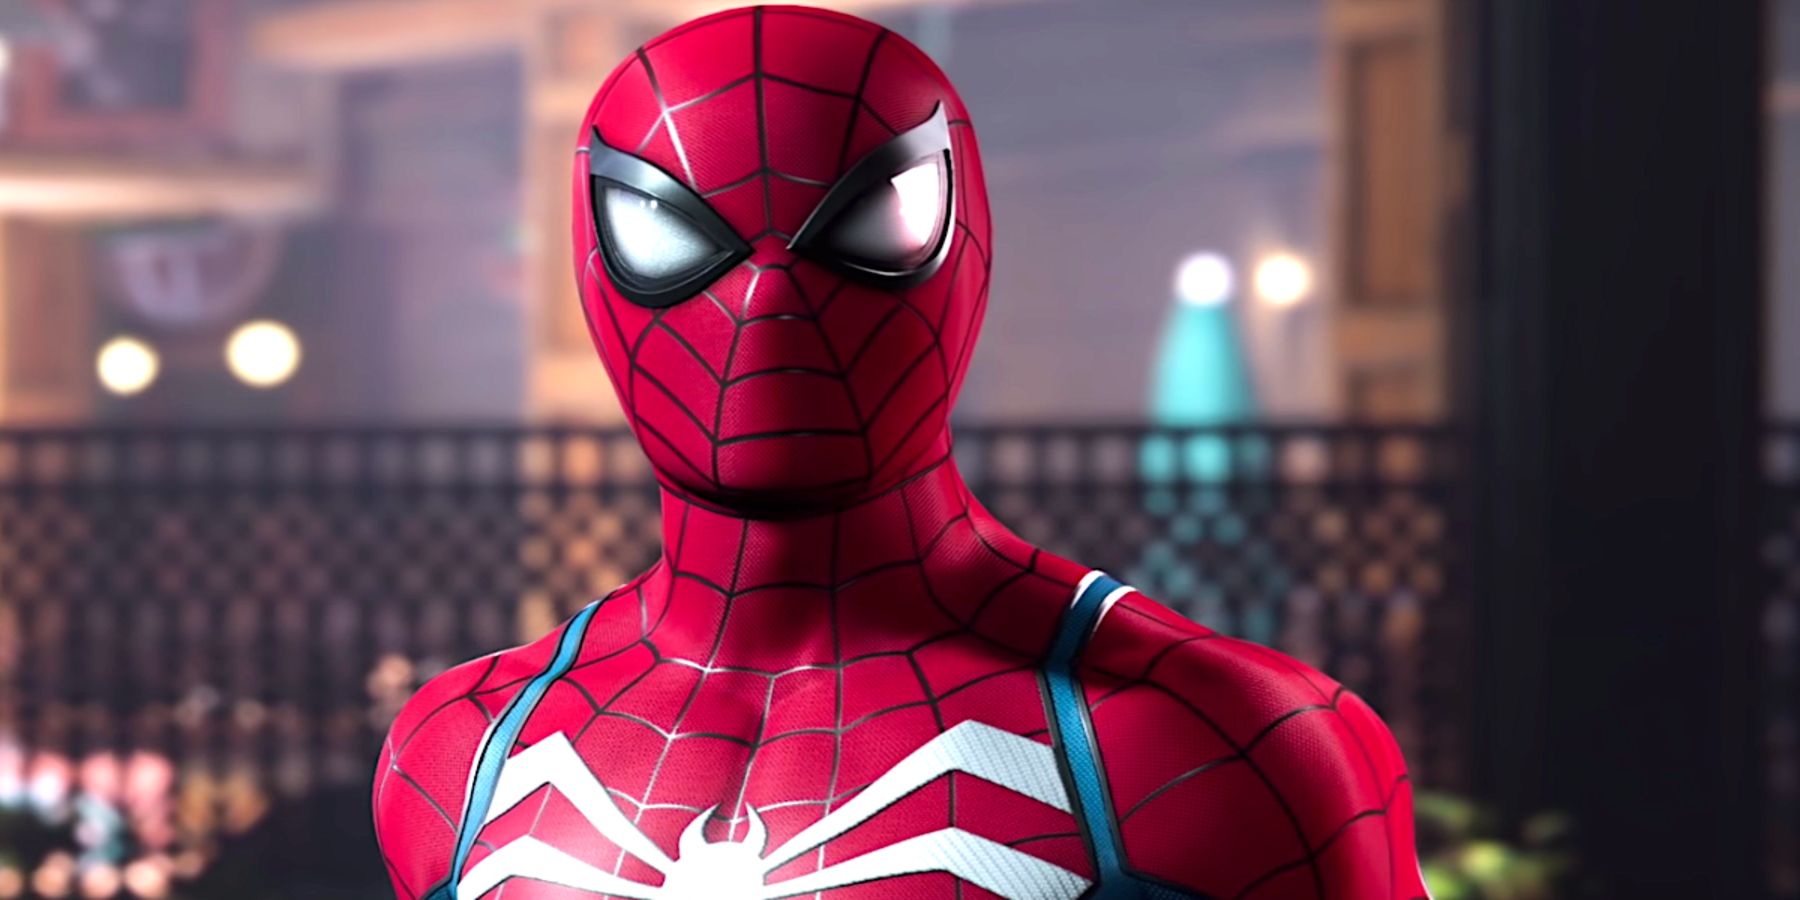 Video hilar îl adaugă pe Bully Maguire la trailerul Marvel’s Spider-Man 2